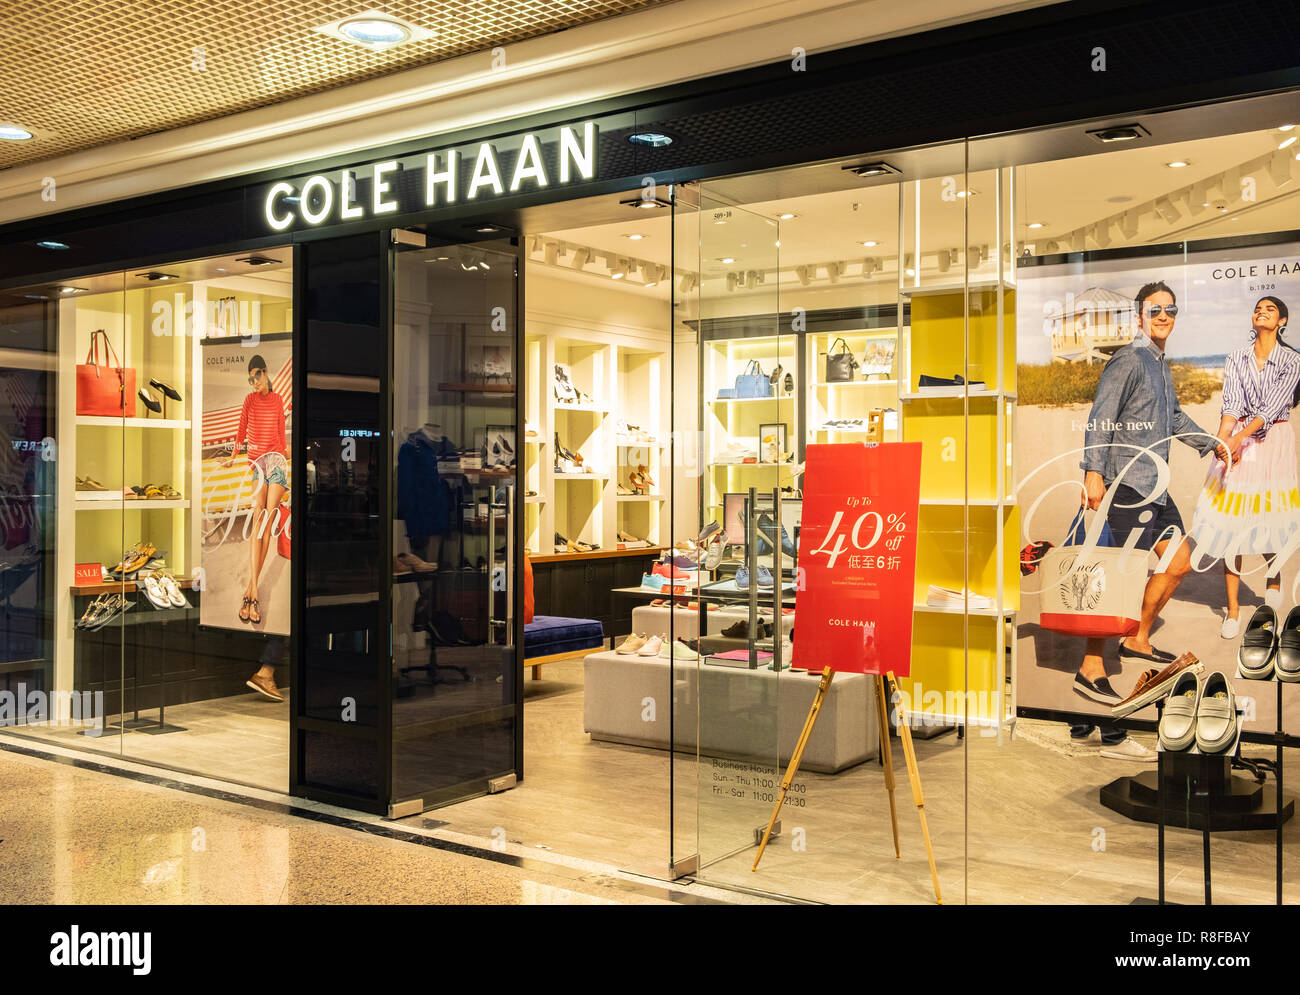 Hong Kong, April 7, 2019: Cole Haan 